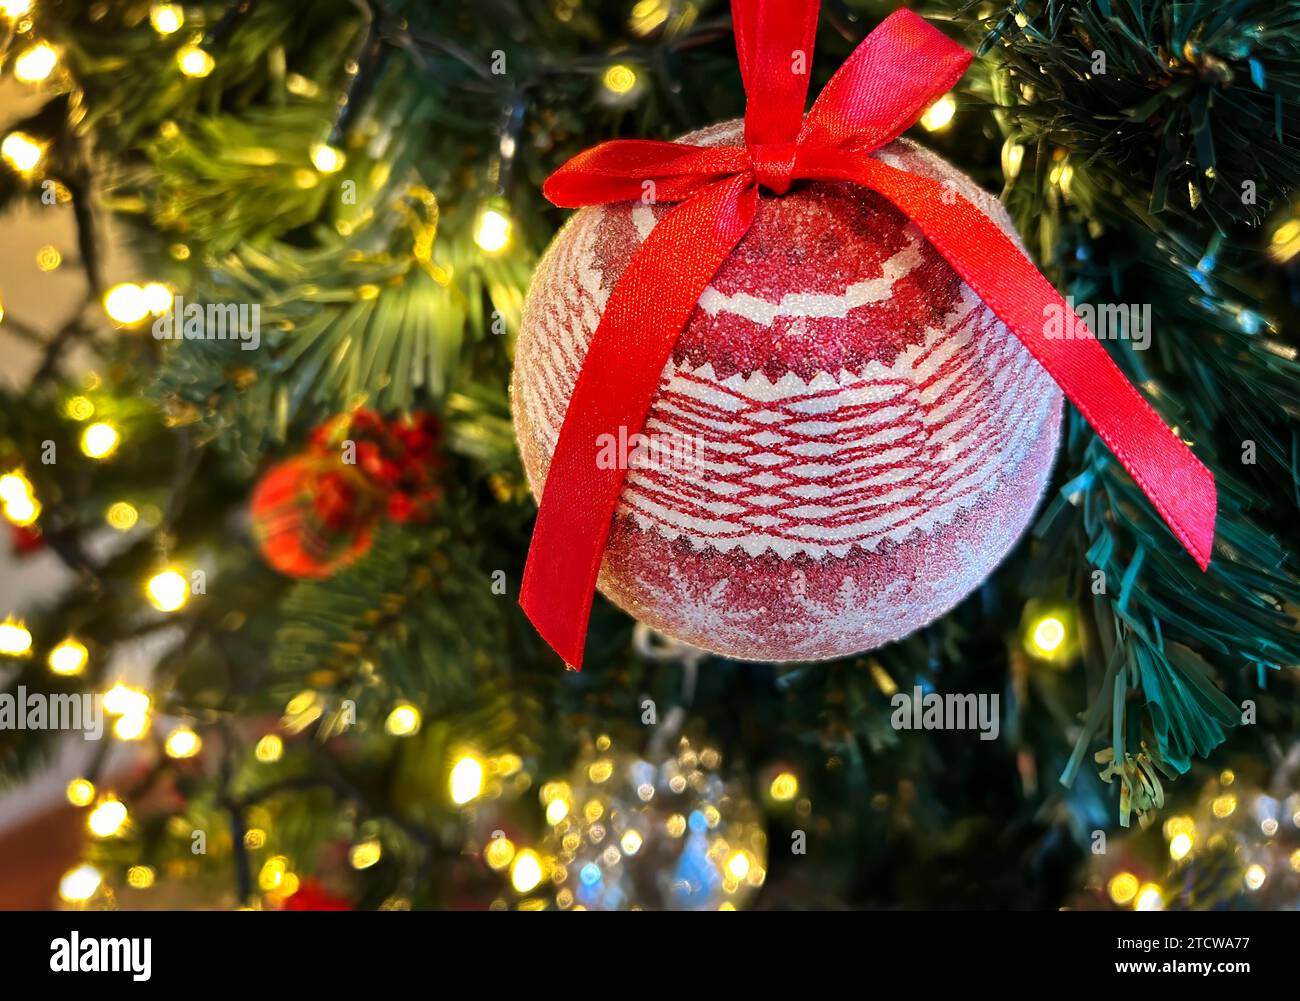 Nahaufnahme einer roten Kugel auf einem Weihnachtsbaum mit unscharfen Lichtern im Hintergrund, geringe Schärfentiefe. Weihnachts- und Neujahrskonzept. Stockfoto